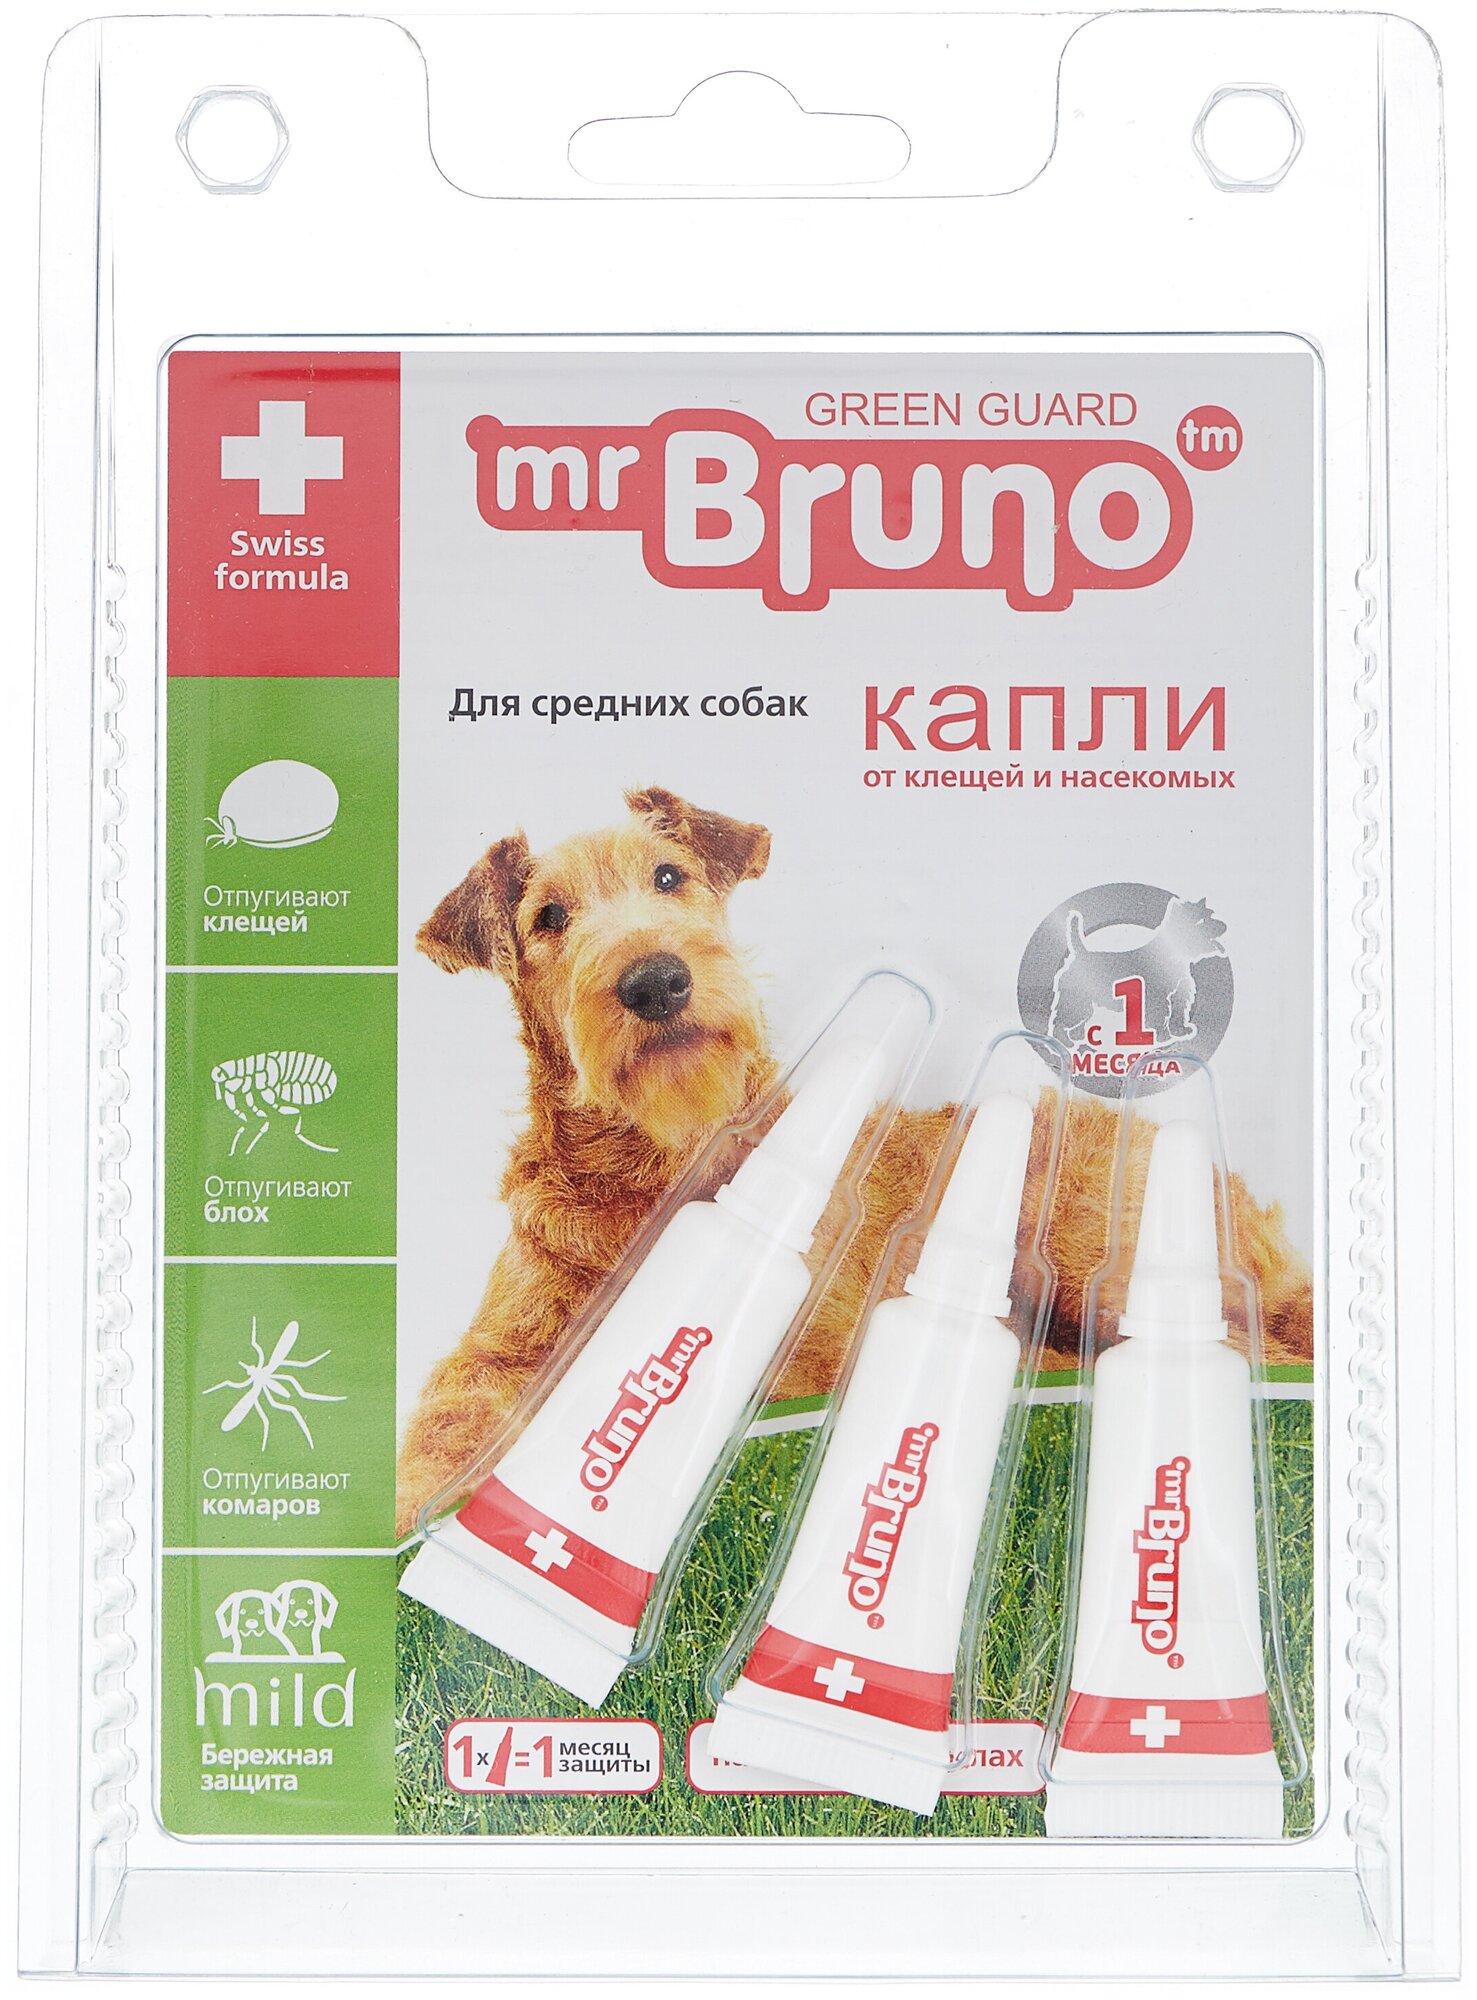 Mr.Bruno  капли от блох и клещей Green Guard для средних собак 3 шт. в уп., 1 уп.